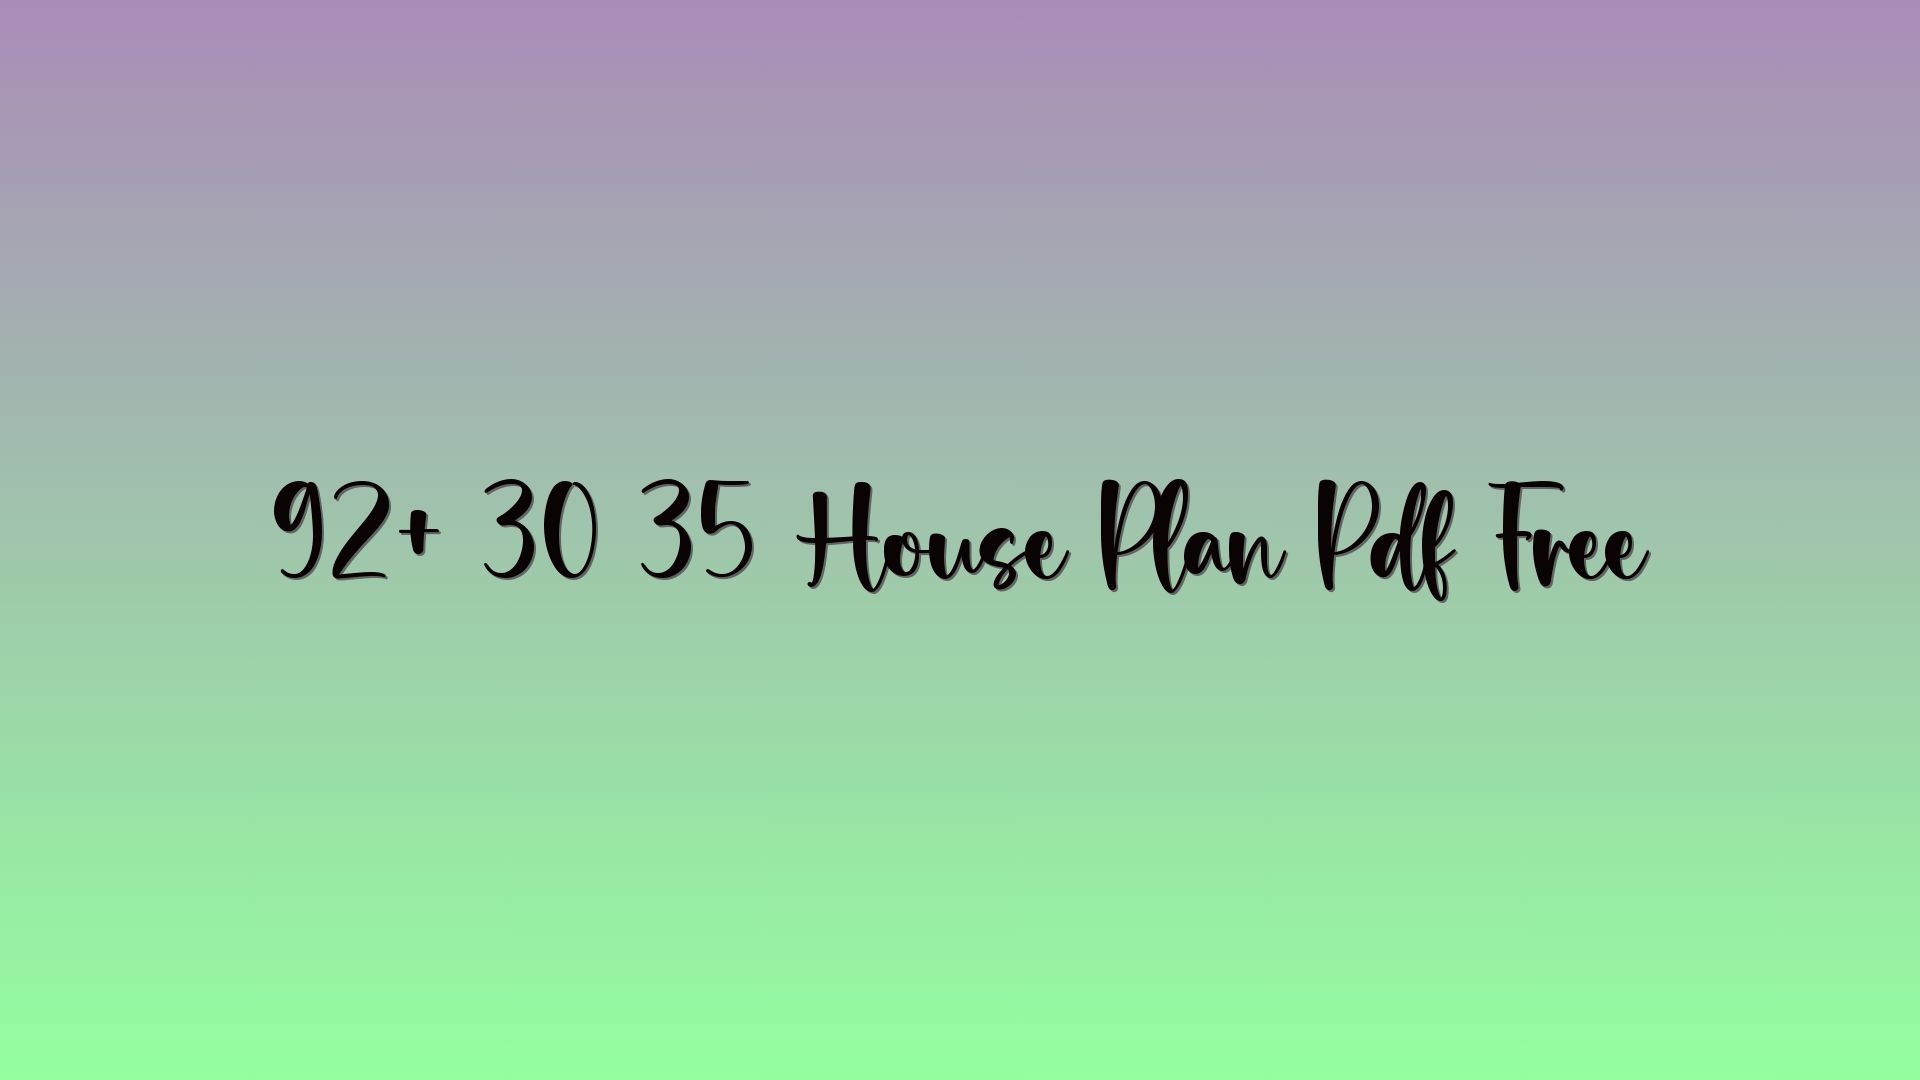 92+ 30 35 House Plan Pdf Free